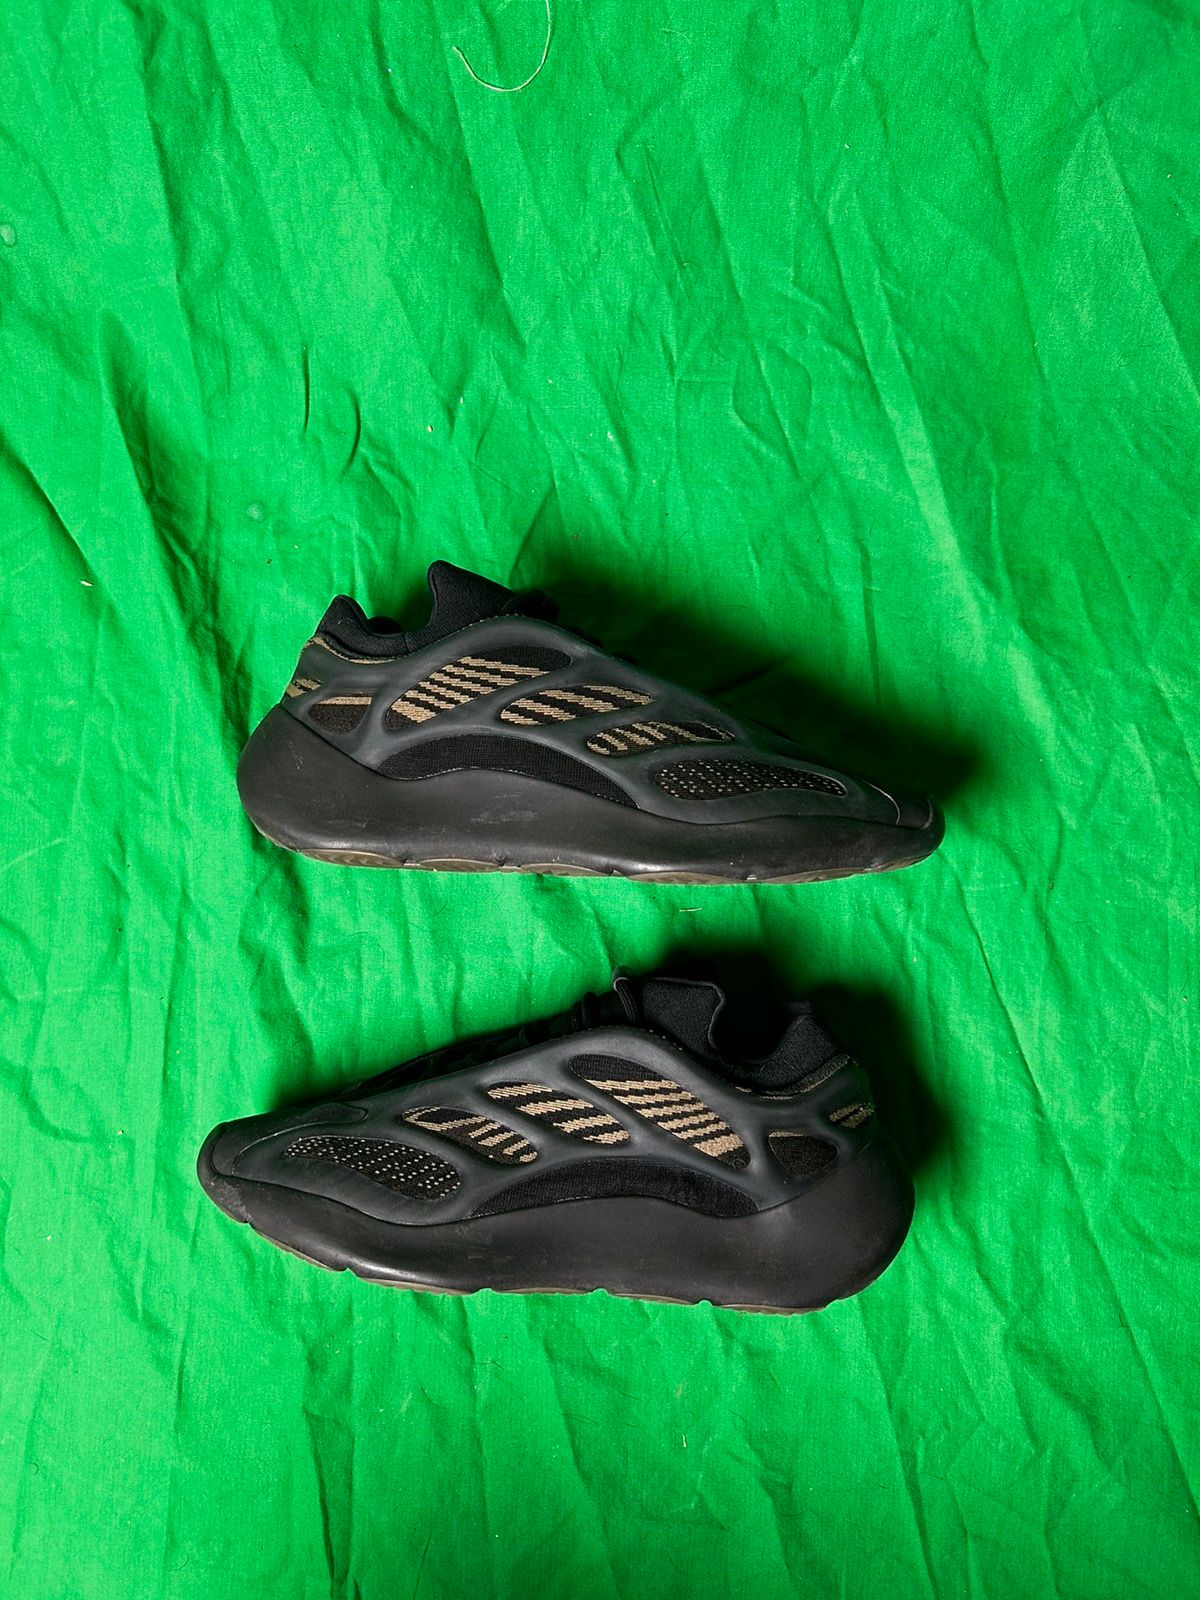 Adidas Yeezy 700 V3 'Dark Glow Size US 12 / EU 45 - 1 Preview